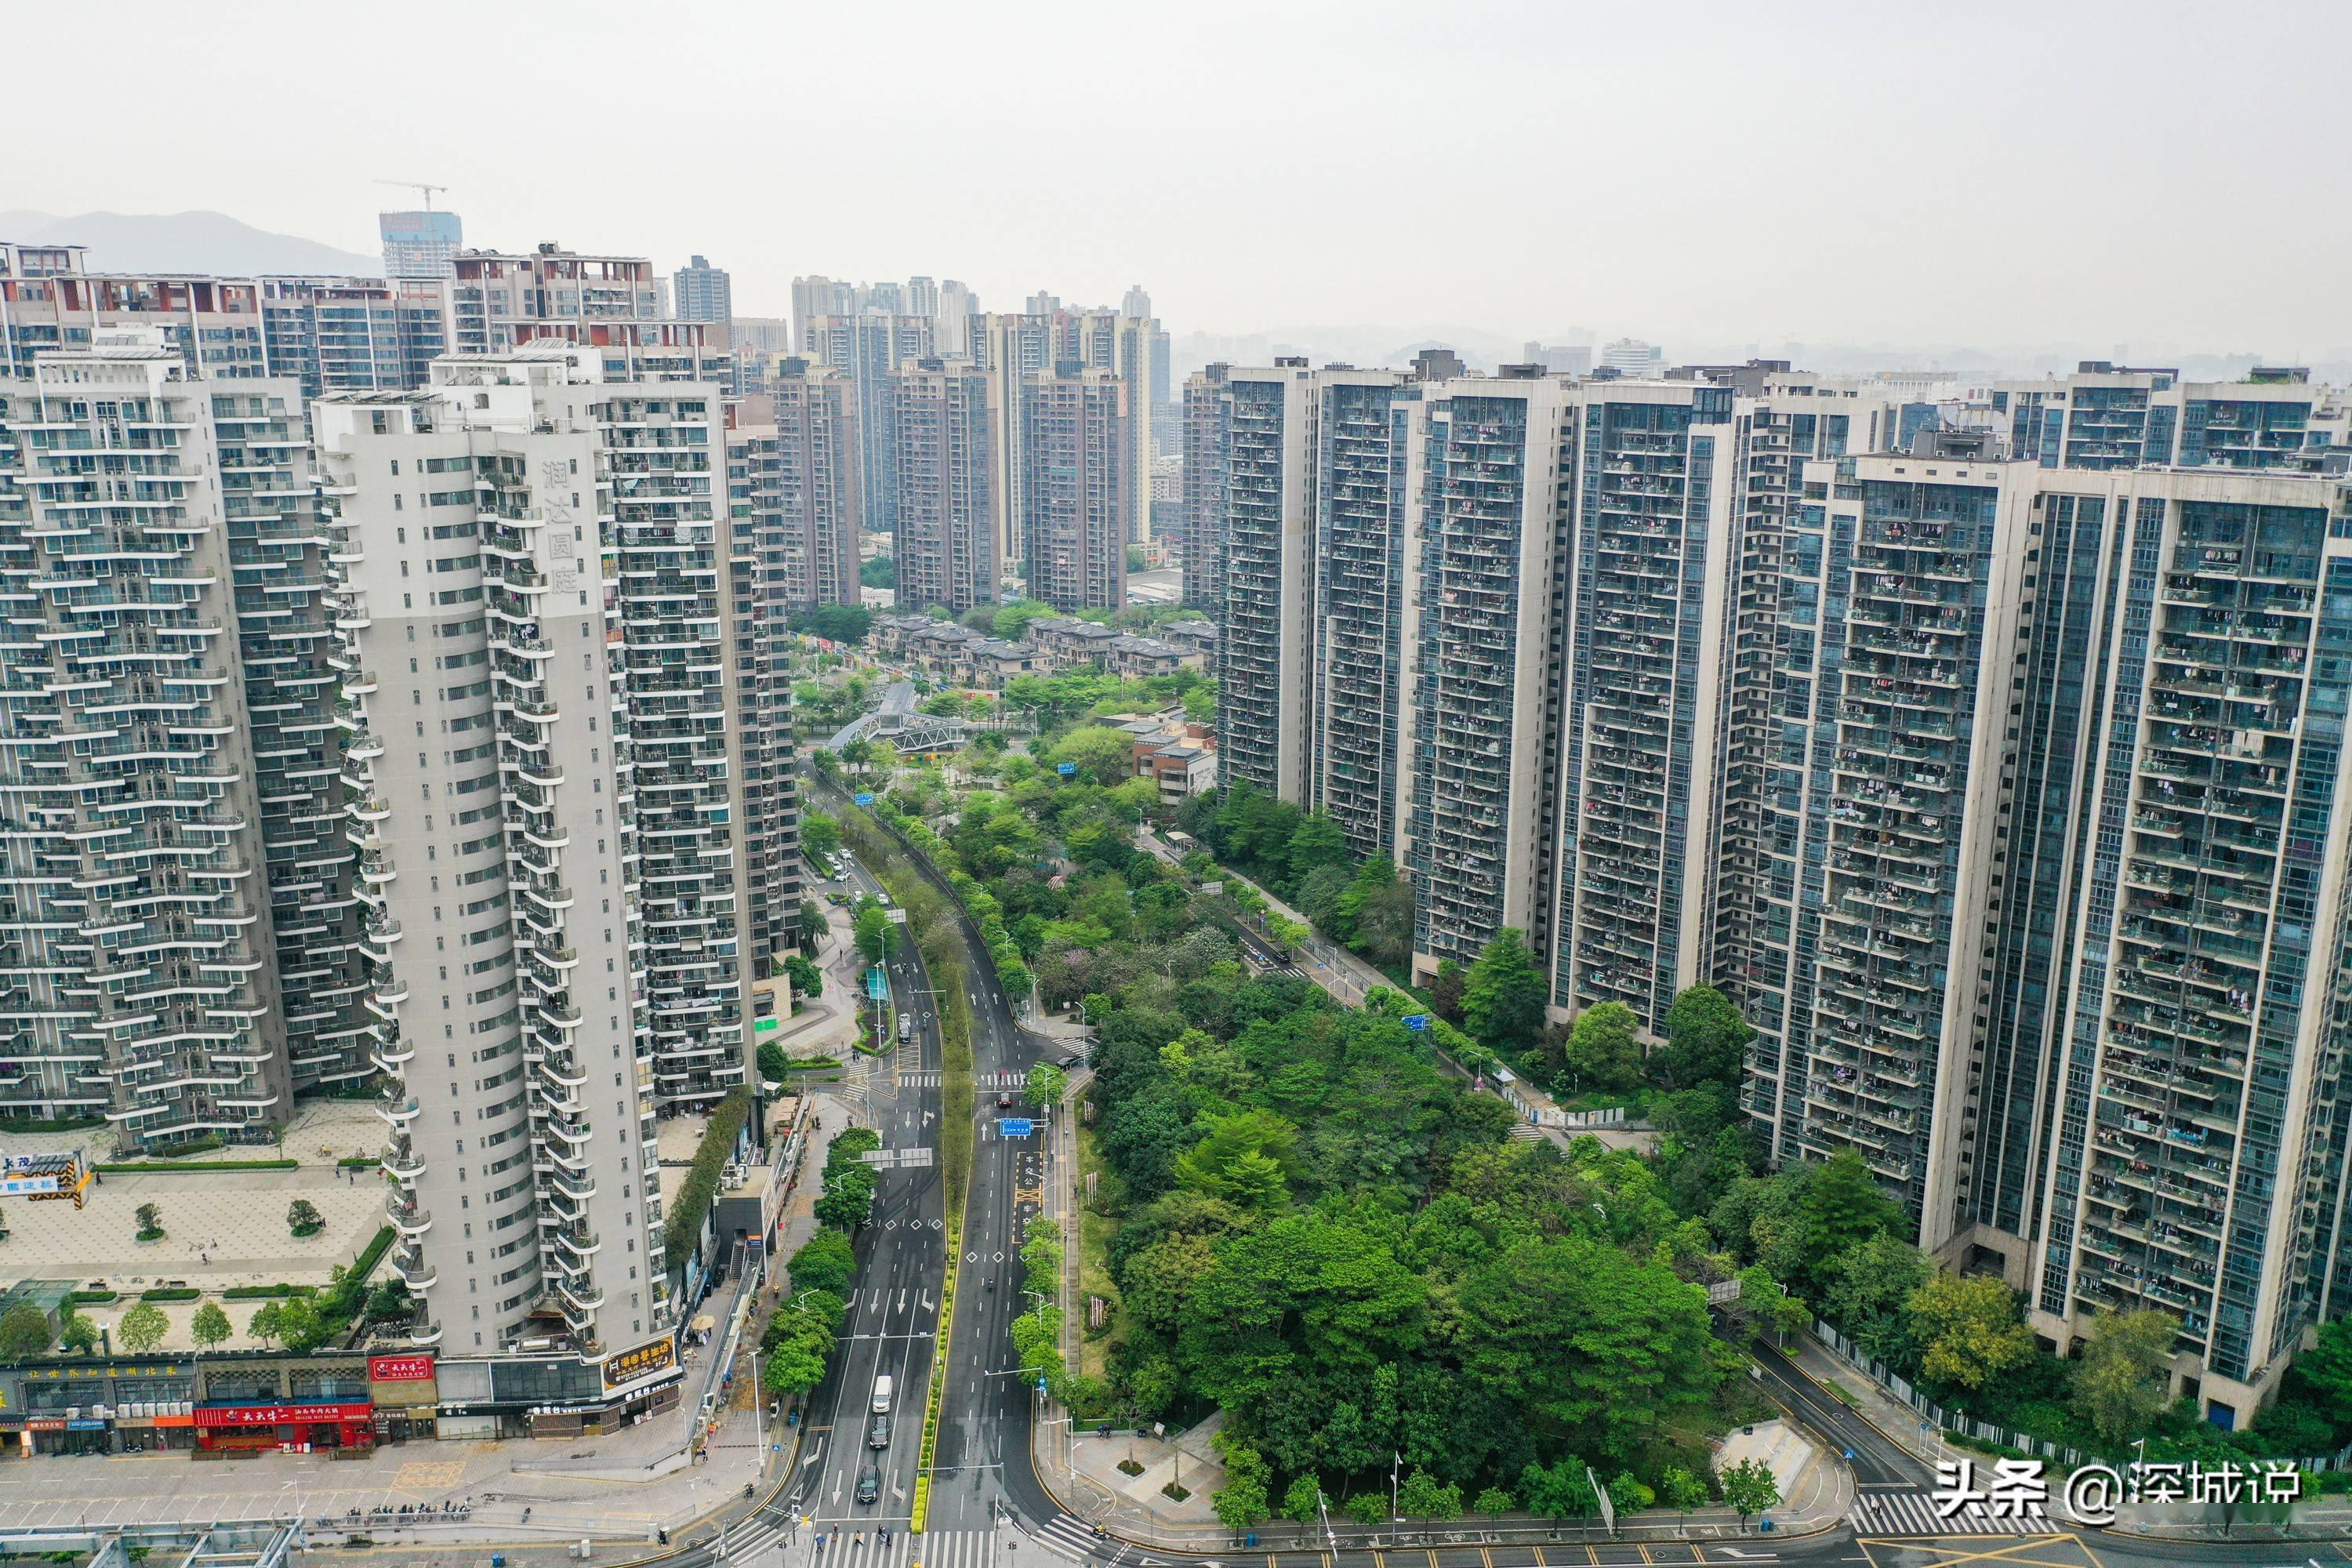 看深圳龙华区发展欣欣向荣,商住楼宇林立,公园绿地穿插其间